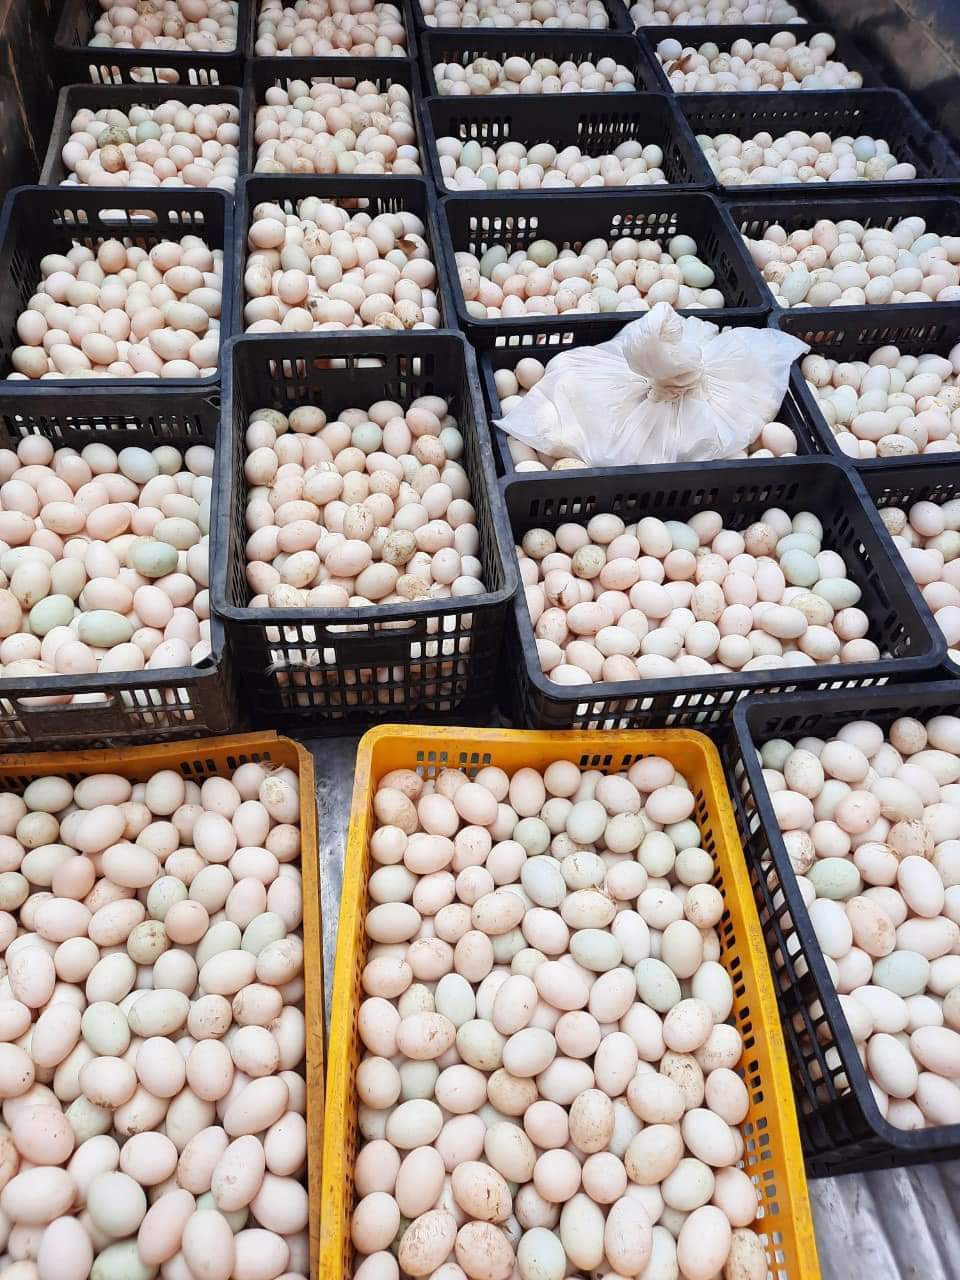  15 nghìn quả trứng đã được đưa lên điểm tiêu thụ của anh Tâm ngày 22/2.